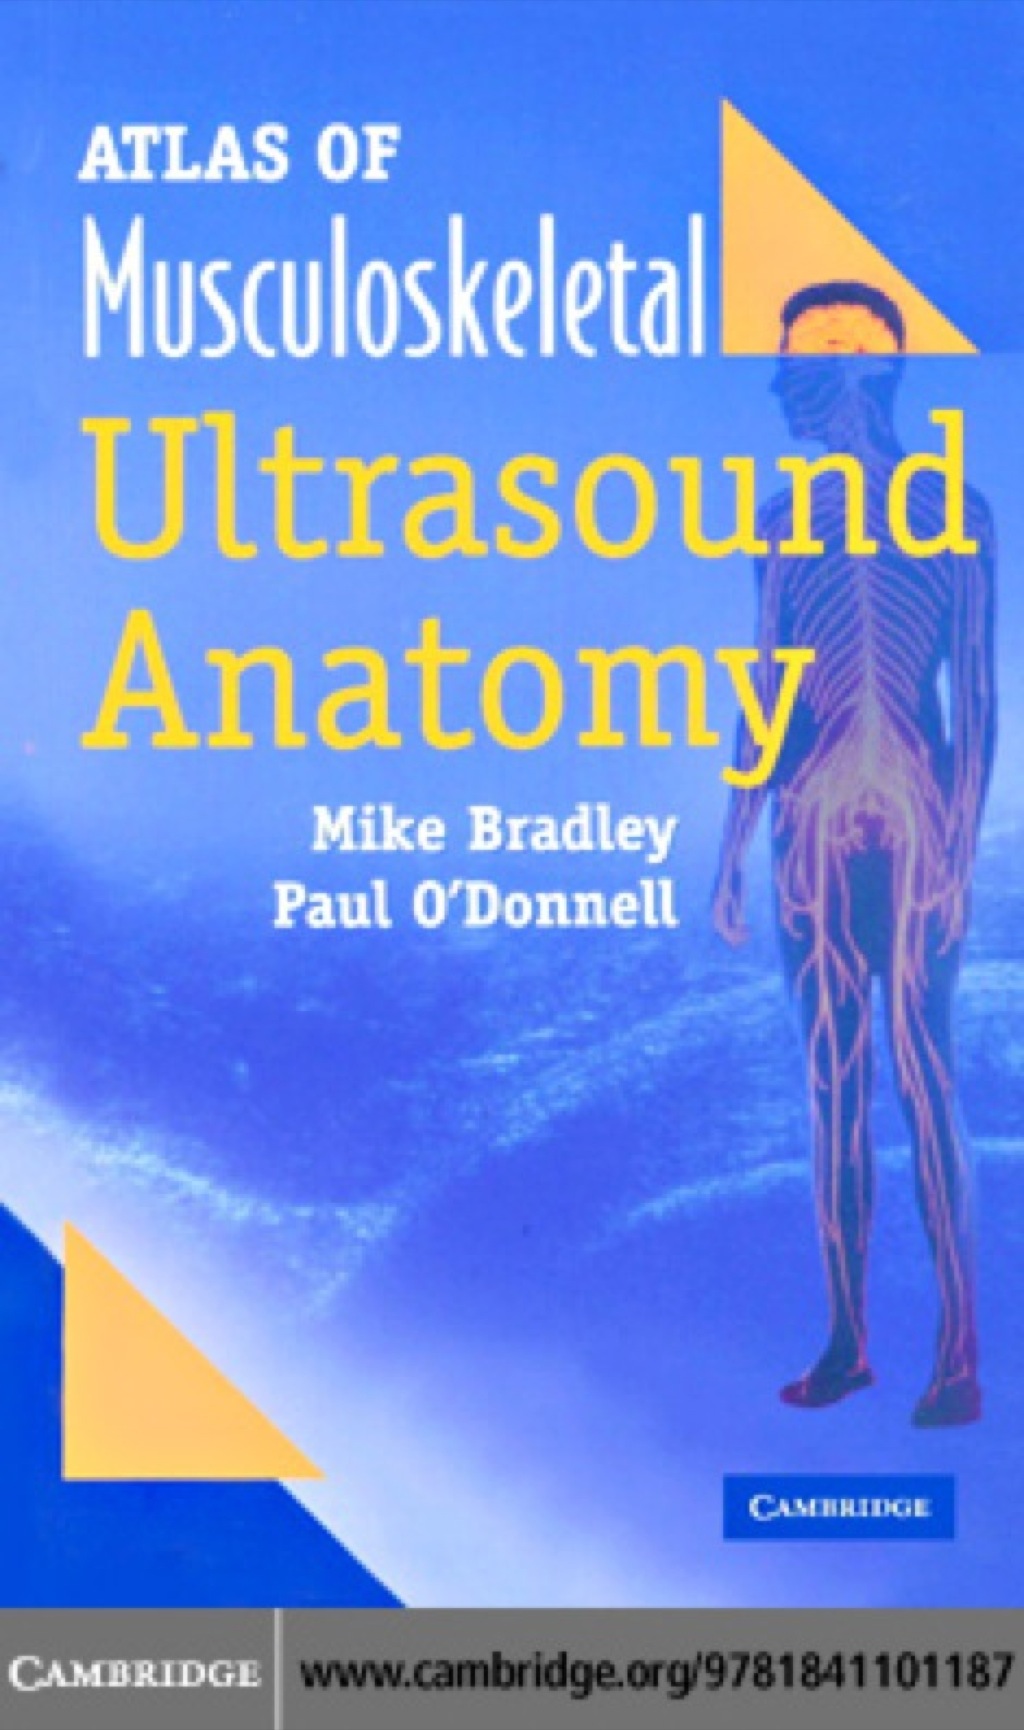 Atlas of Musculoskeletal Ultrasound Anatomy (eBook) - Mike Bradley et al